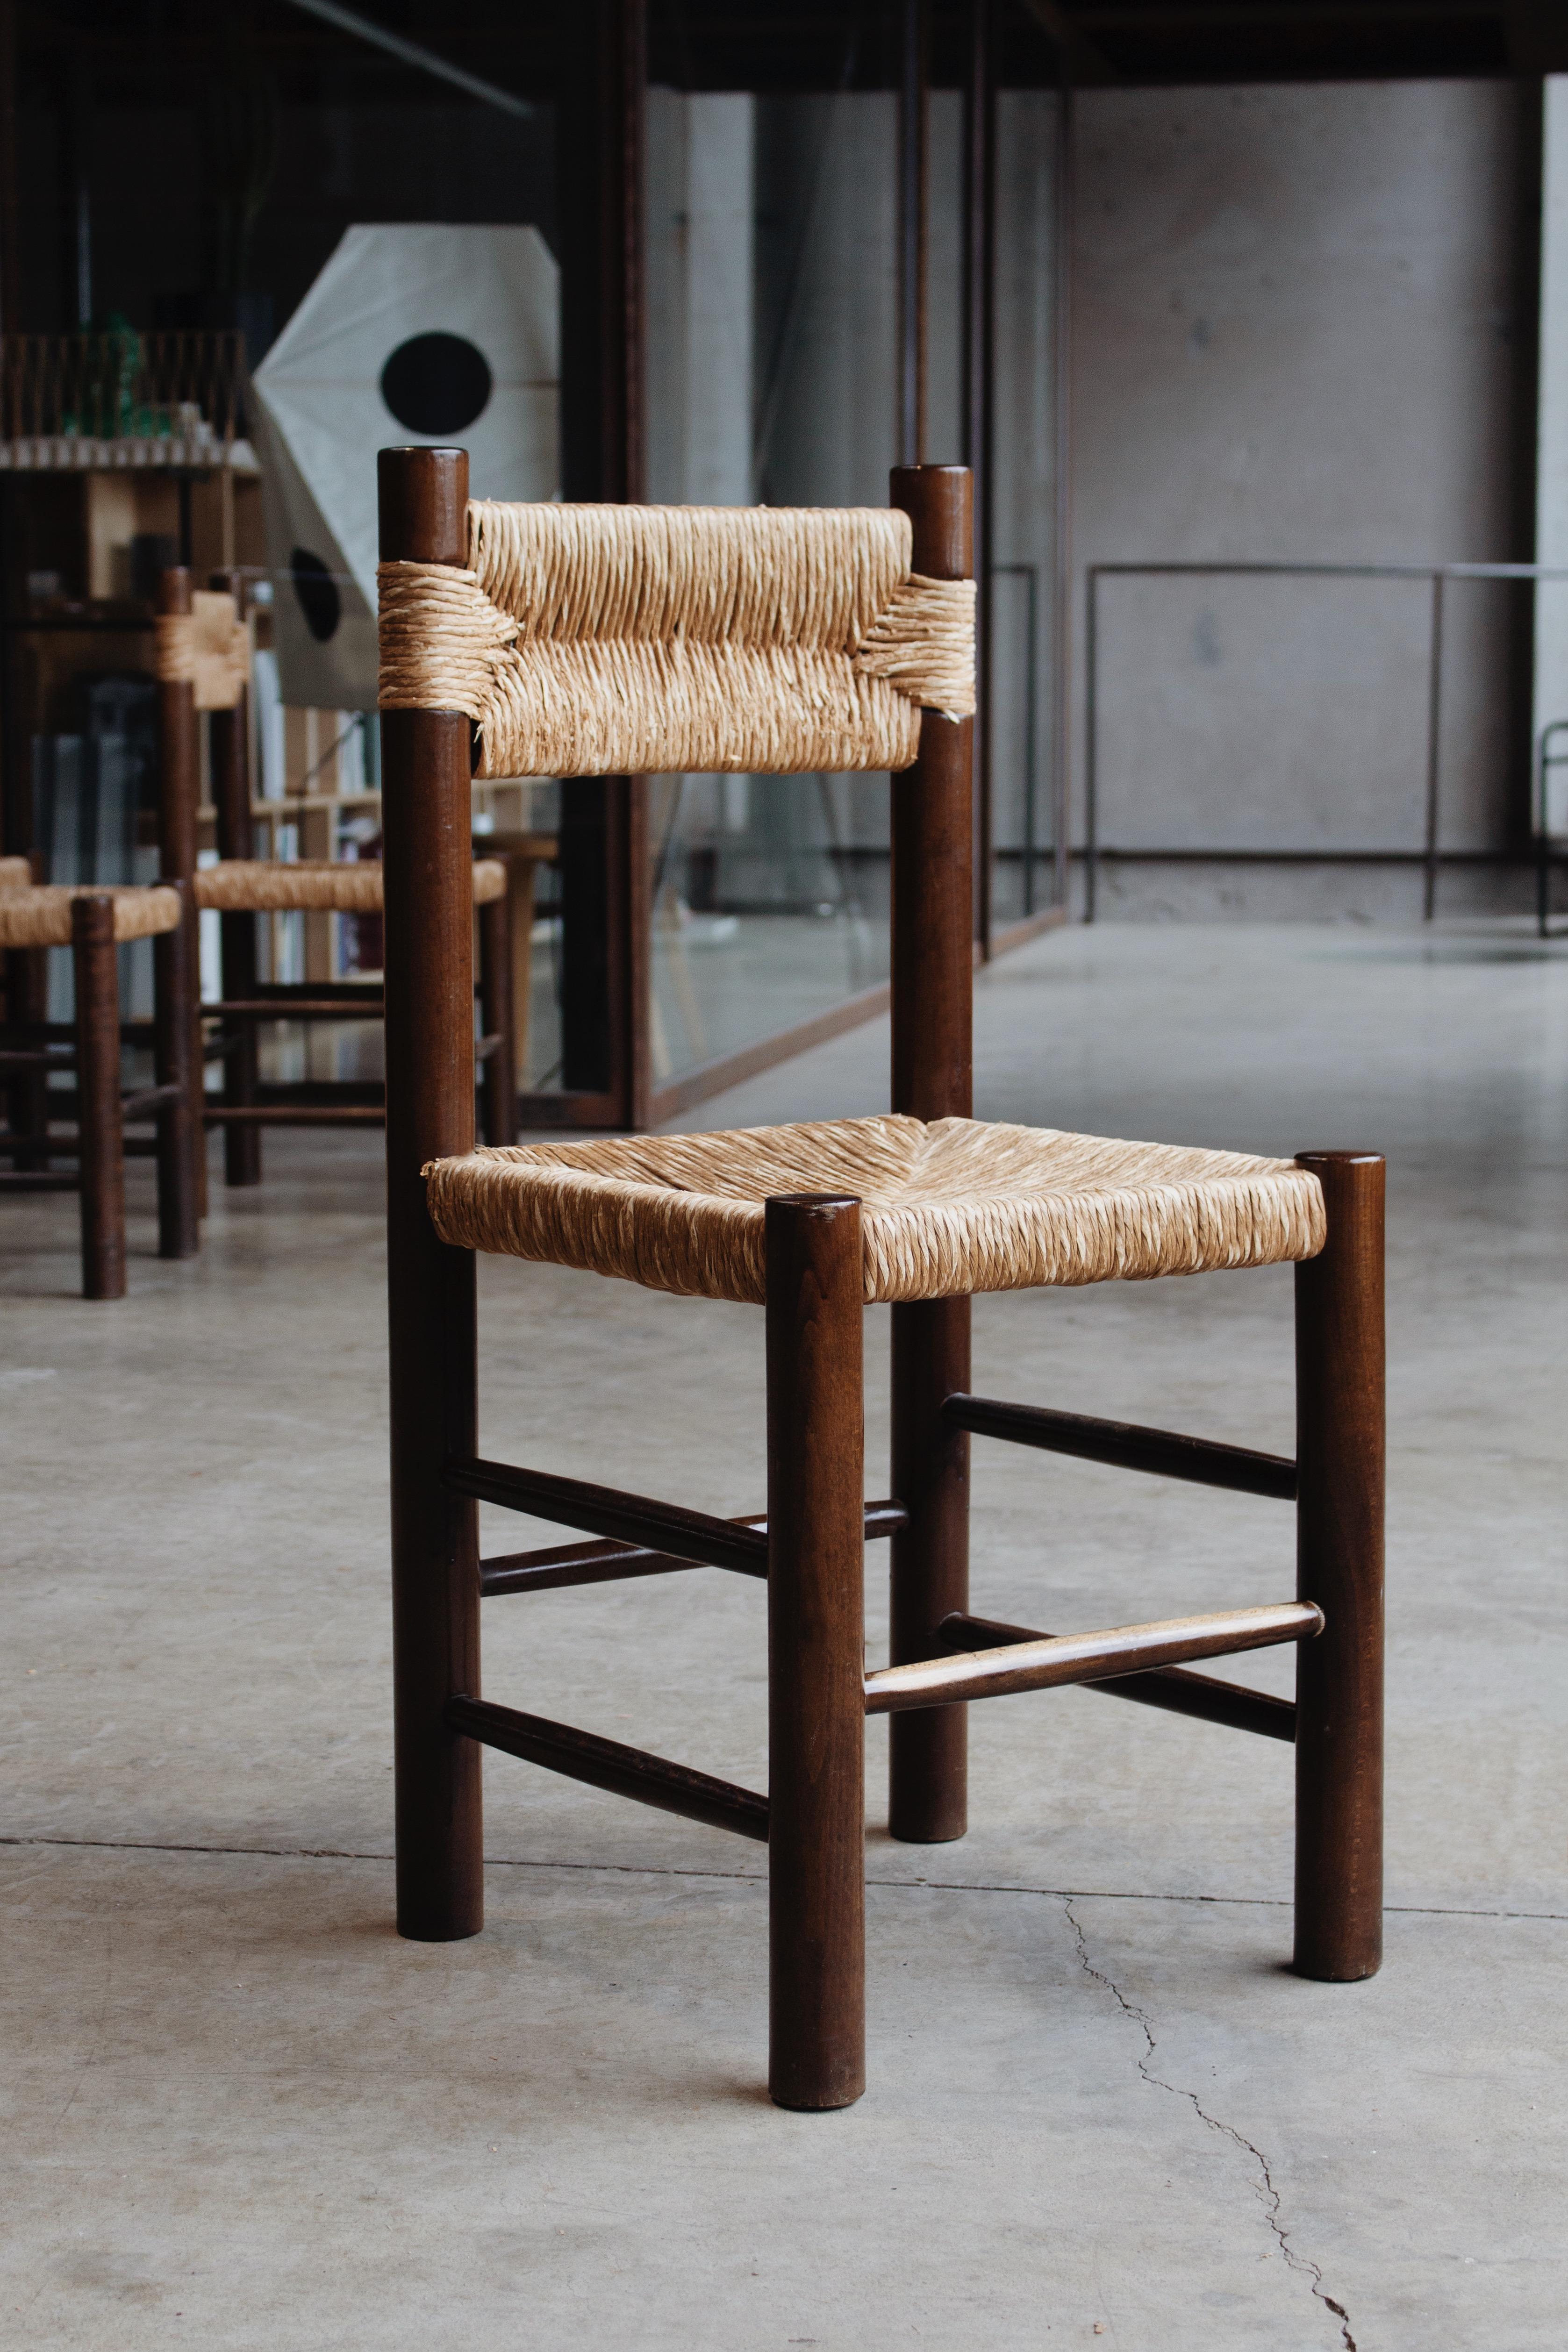 Chaises de salle à manger Charlotte Perriand pour Robert Sentou, paille et bois, France, 1964, ensemble de quatre.
 
Les chaises ont un design simple et intemporel. Le dossier et l'assise fantaisie en paille combinés à la structure en bois de pin